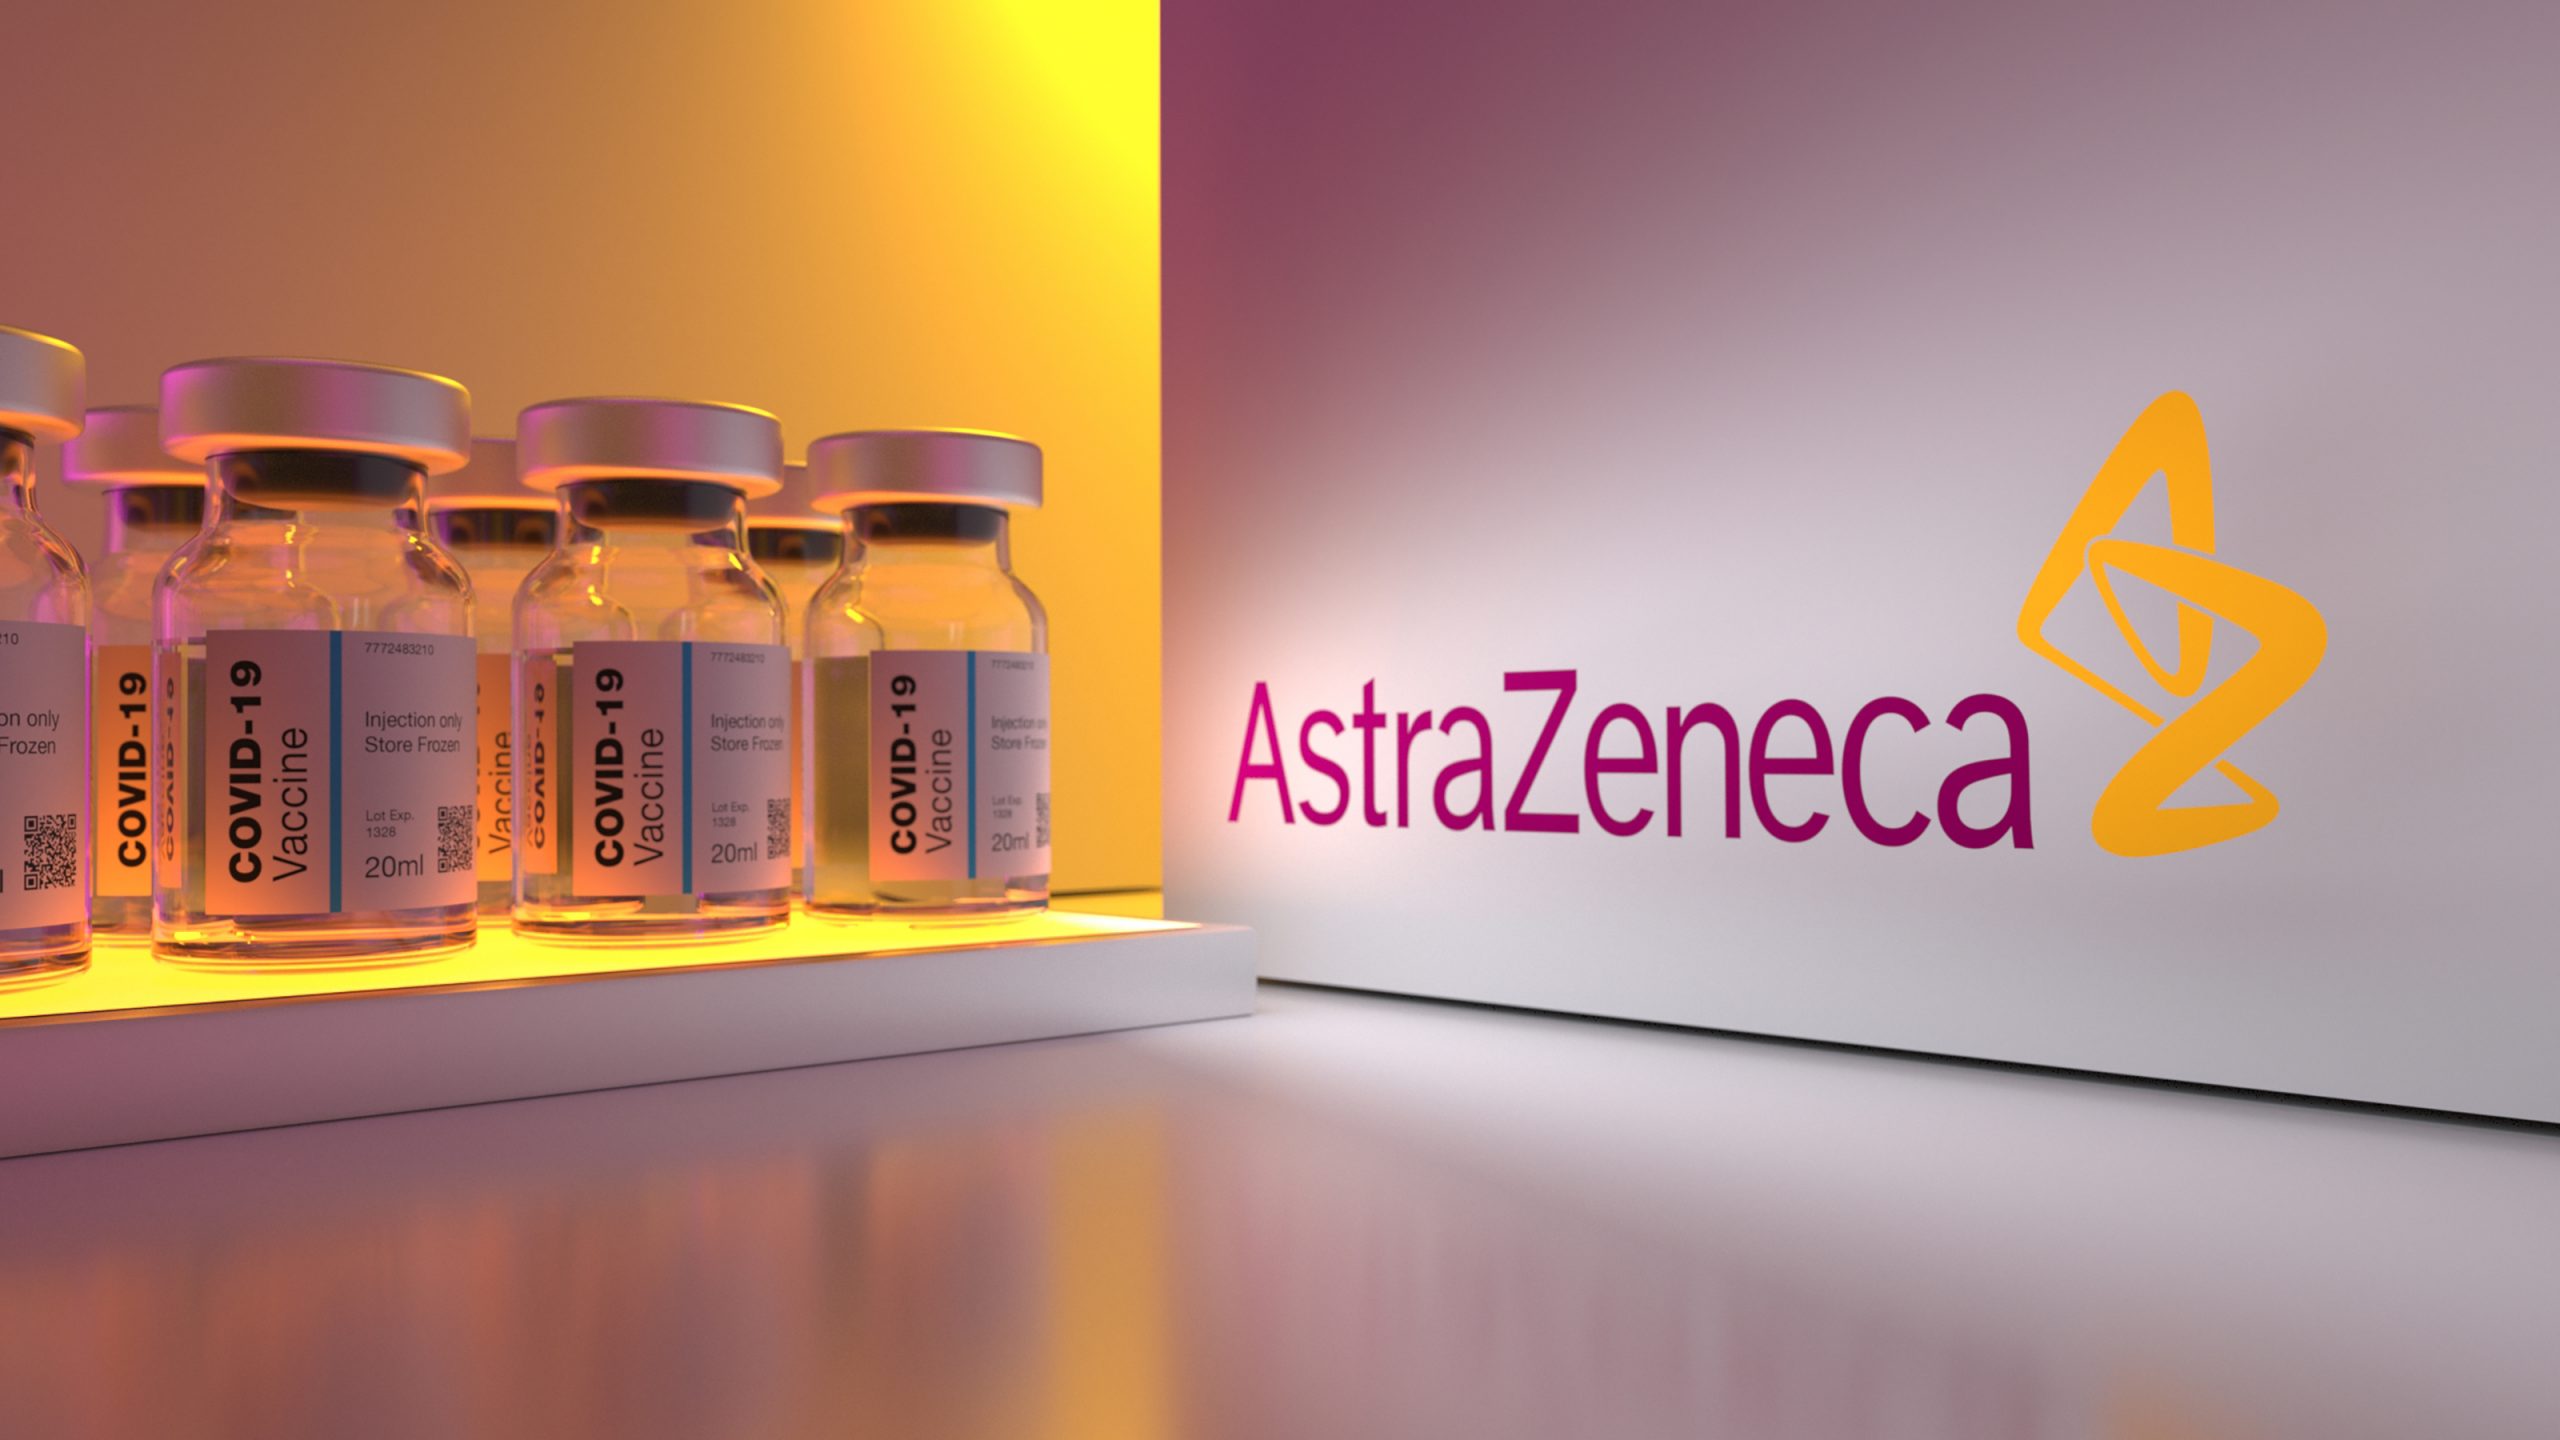 Macao suspends AstraZeneca vaccine order